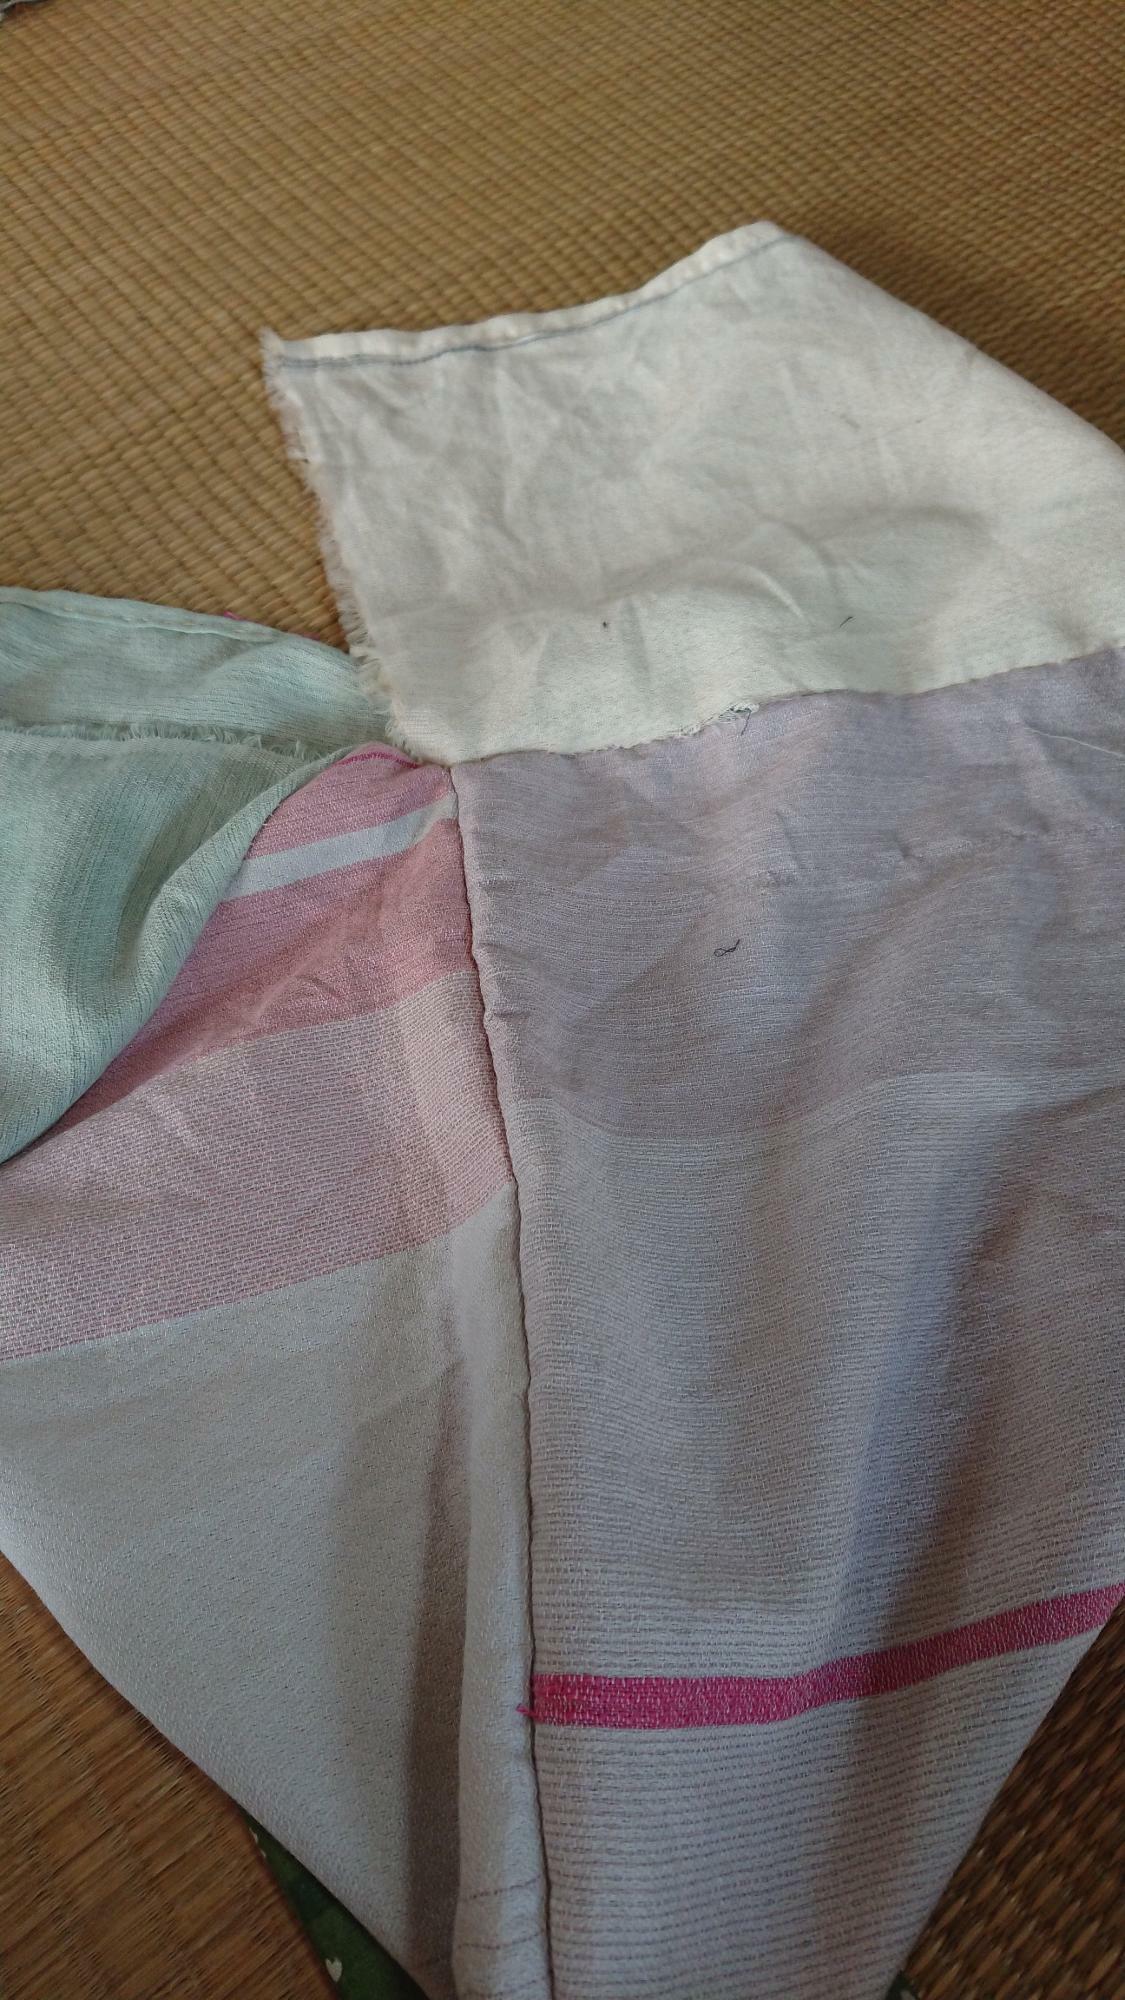 縫い合わせてステキなあずま袋ができていました。